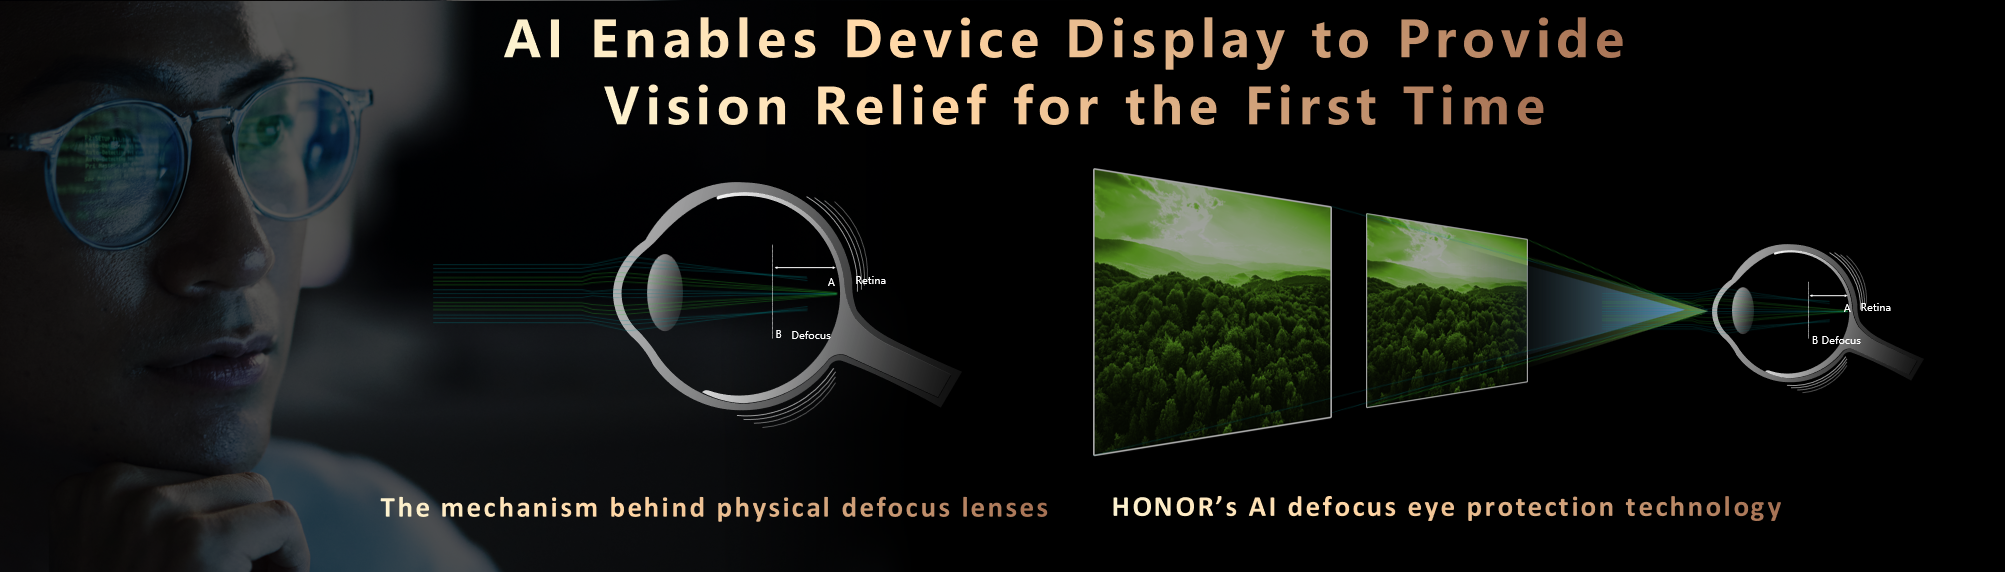 HONOR анонсировал первую на рынке технологию бифокальной защиты зрения и детектор дипфейков для защиты от интернет-мошенничества